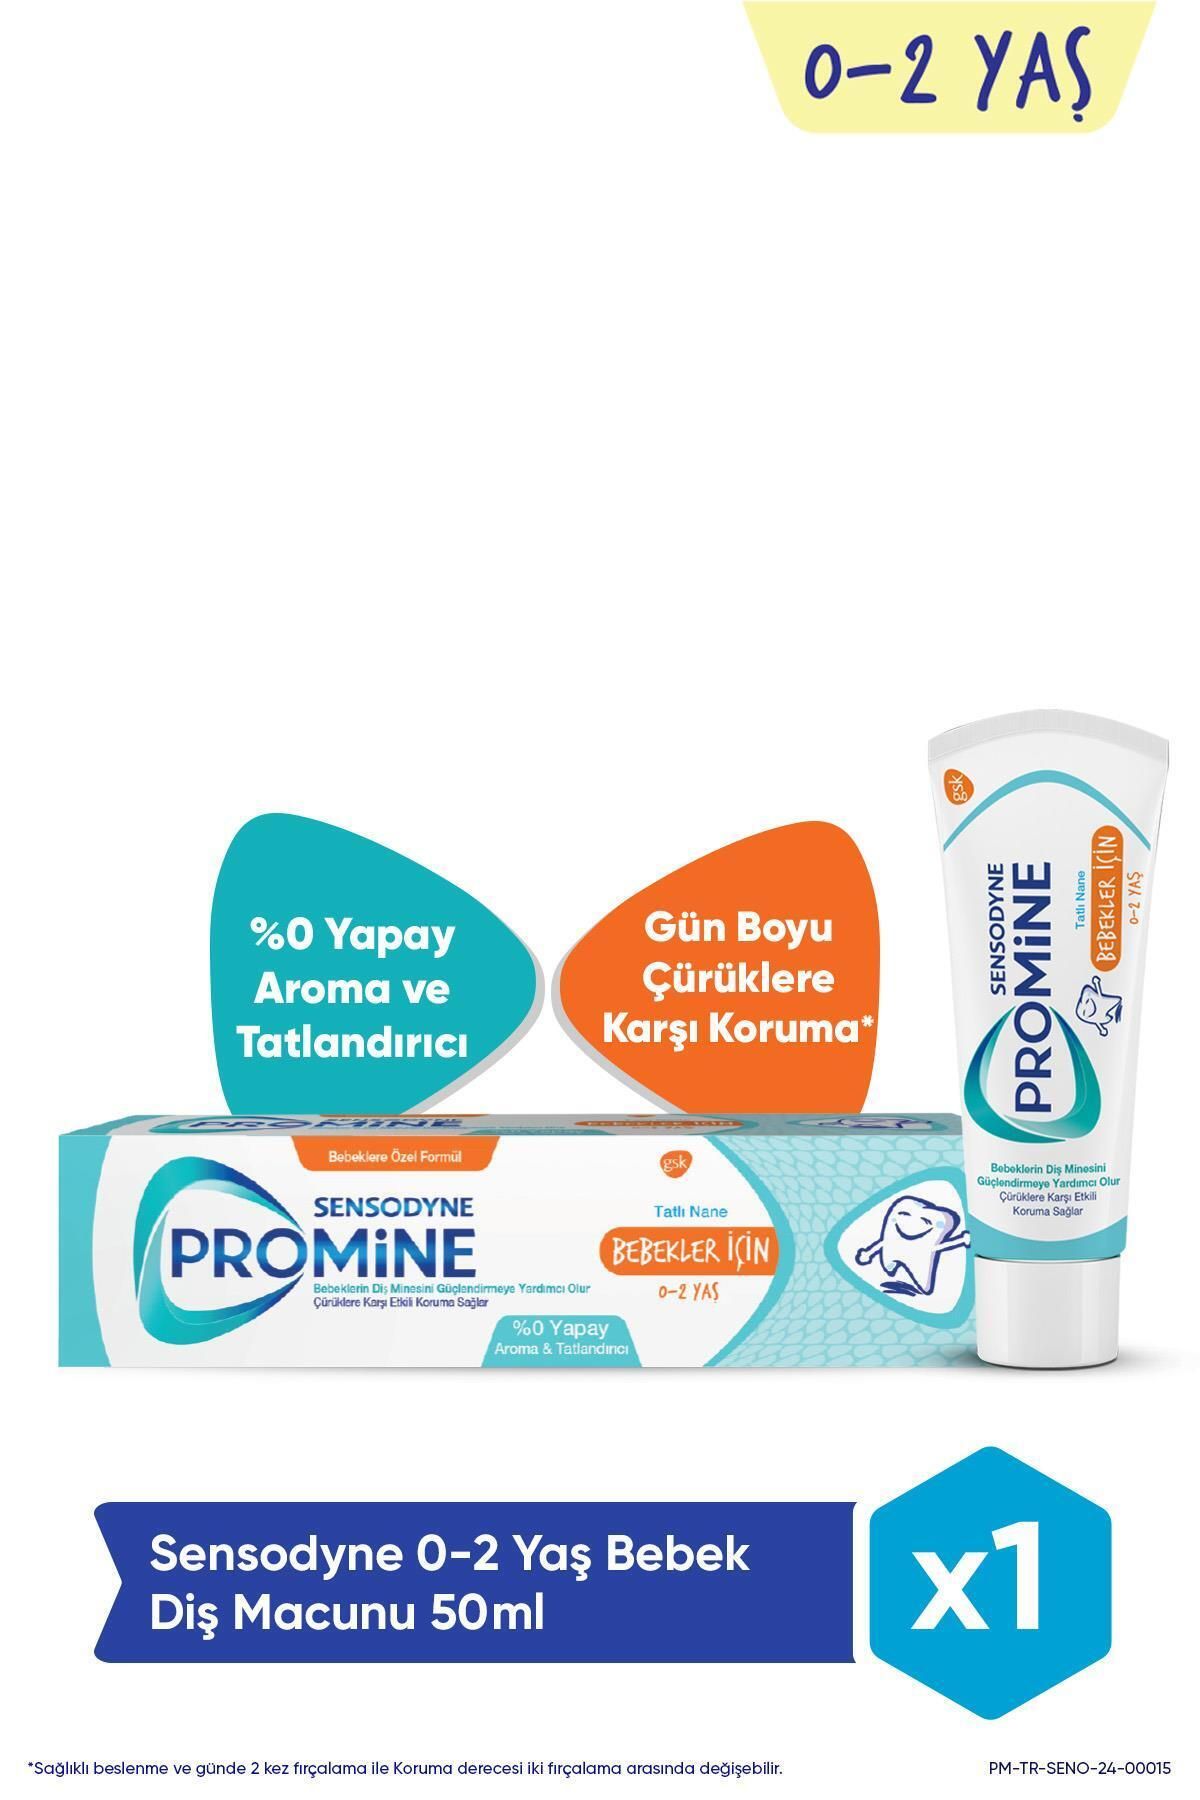 Sensodyne Promine 0-2 Yaş Bebekler İçin Yapay Aroma&Tatlandırıcı İçermeyen Şekersiz Diş Macunu 50ml 8681291340970